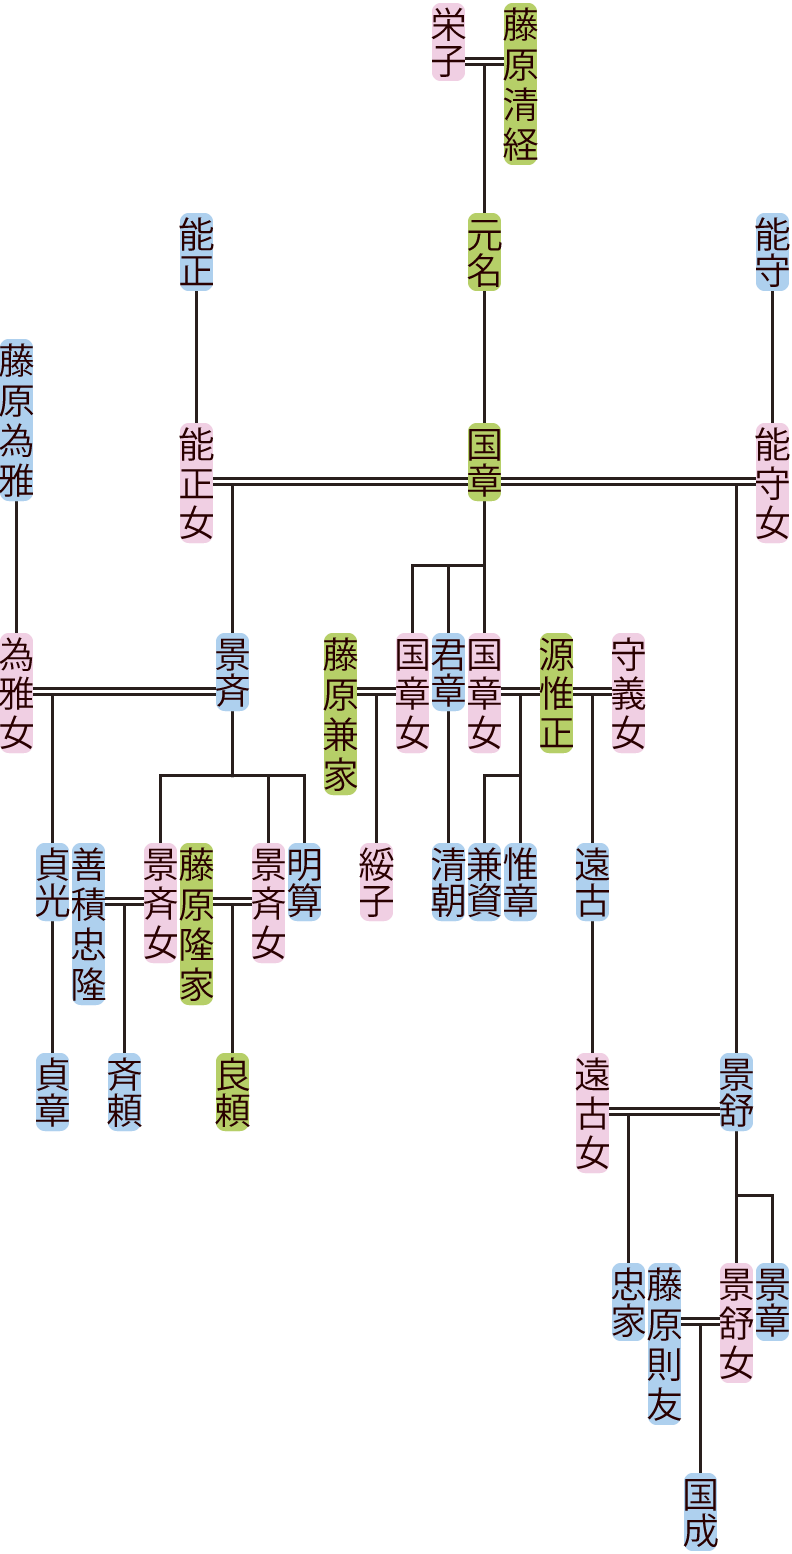 藤原国章の系図